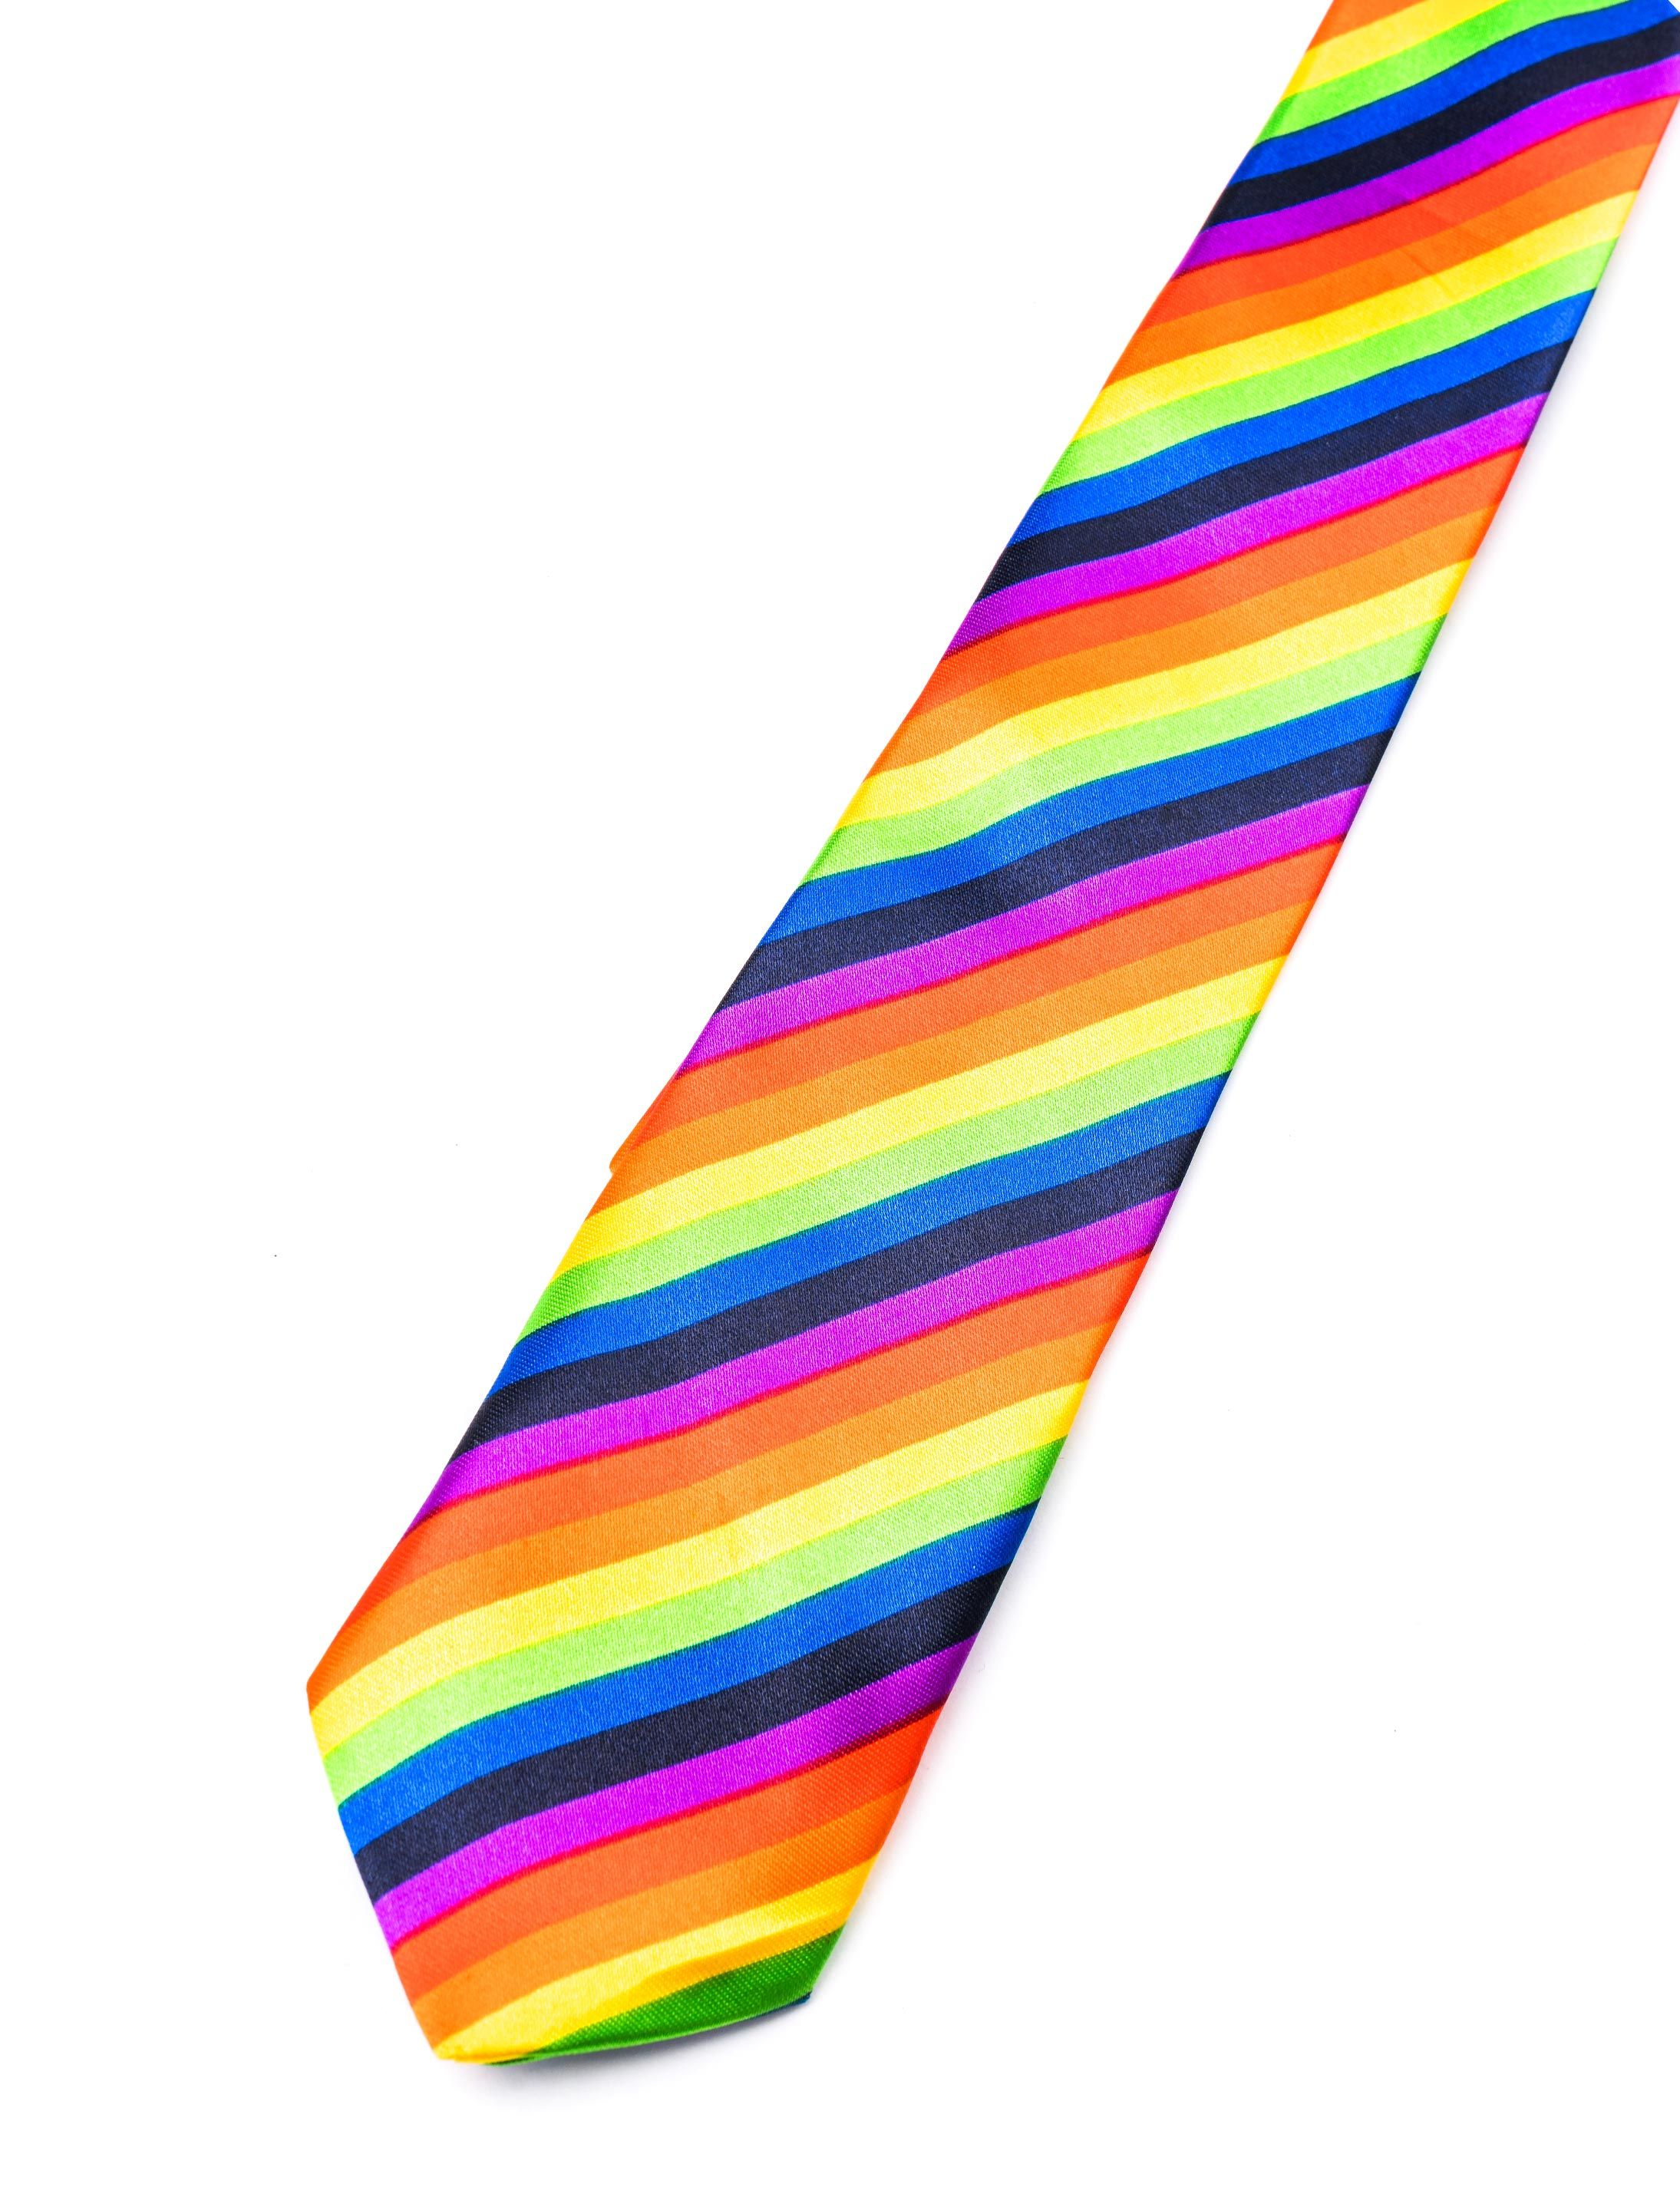 Krawatte Regenbogen